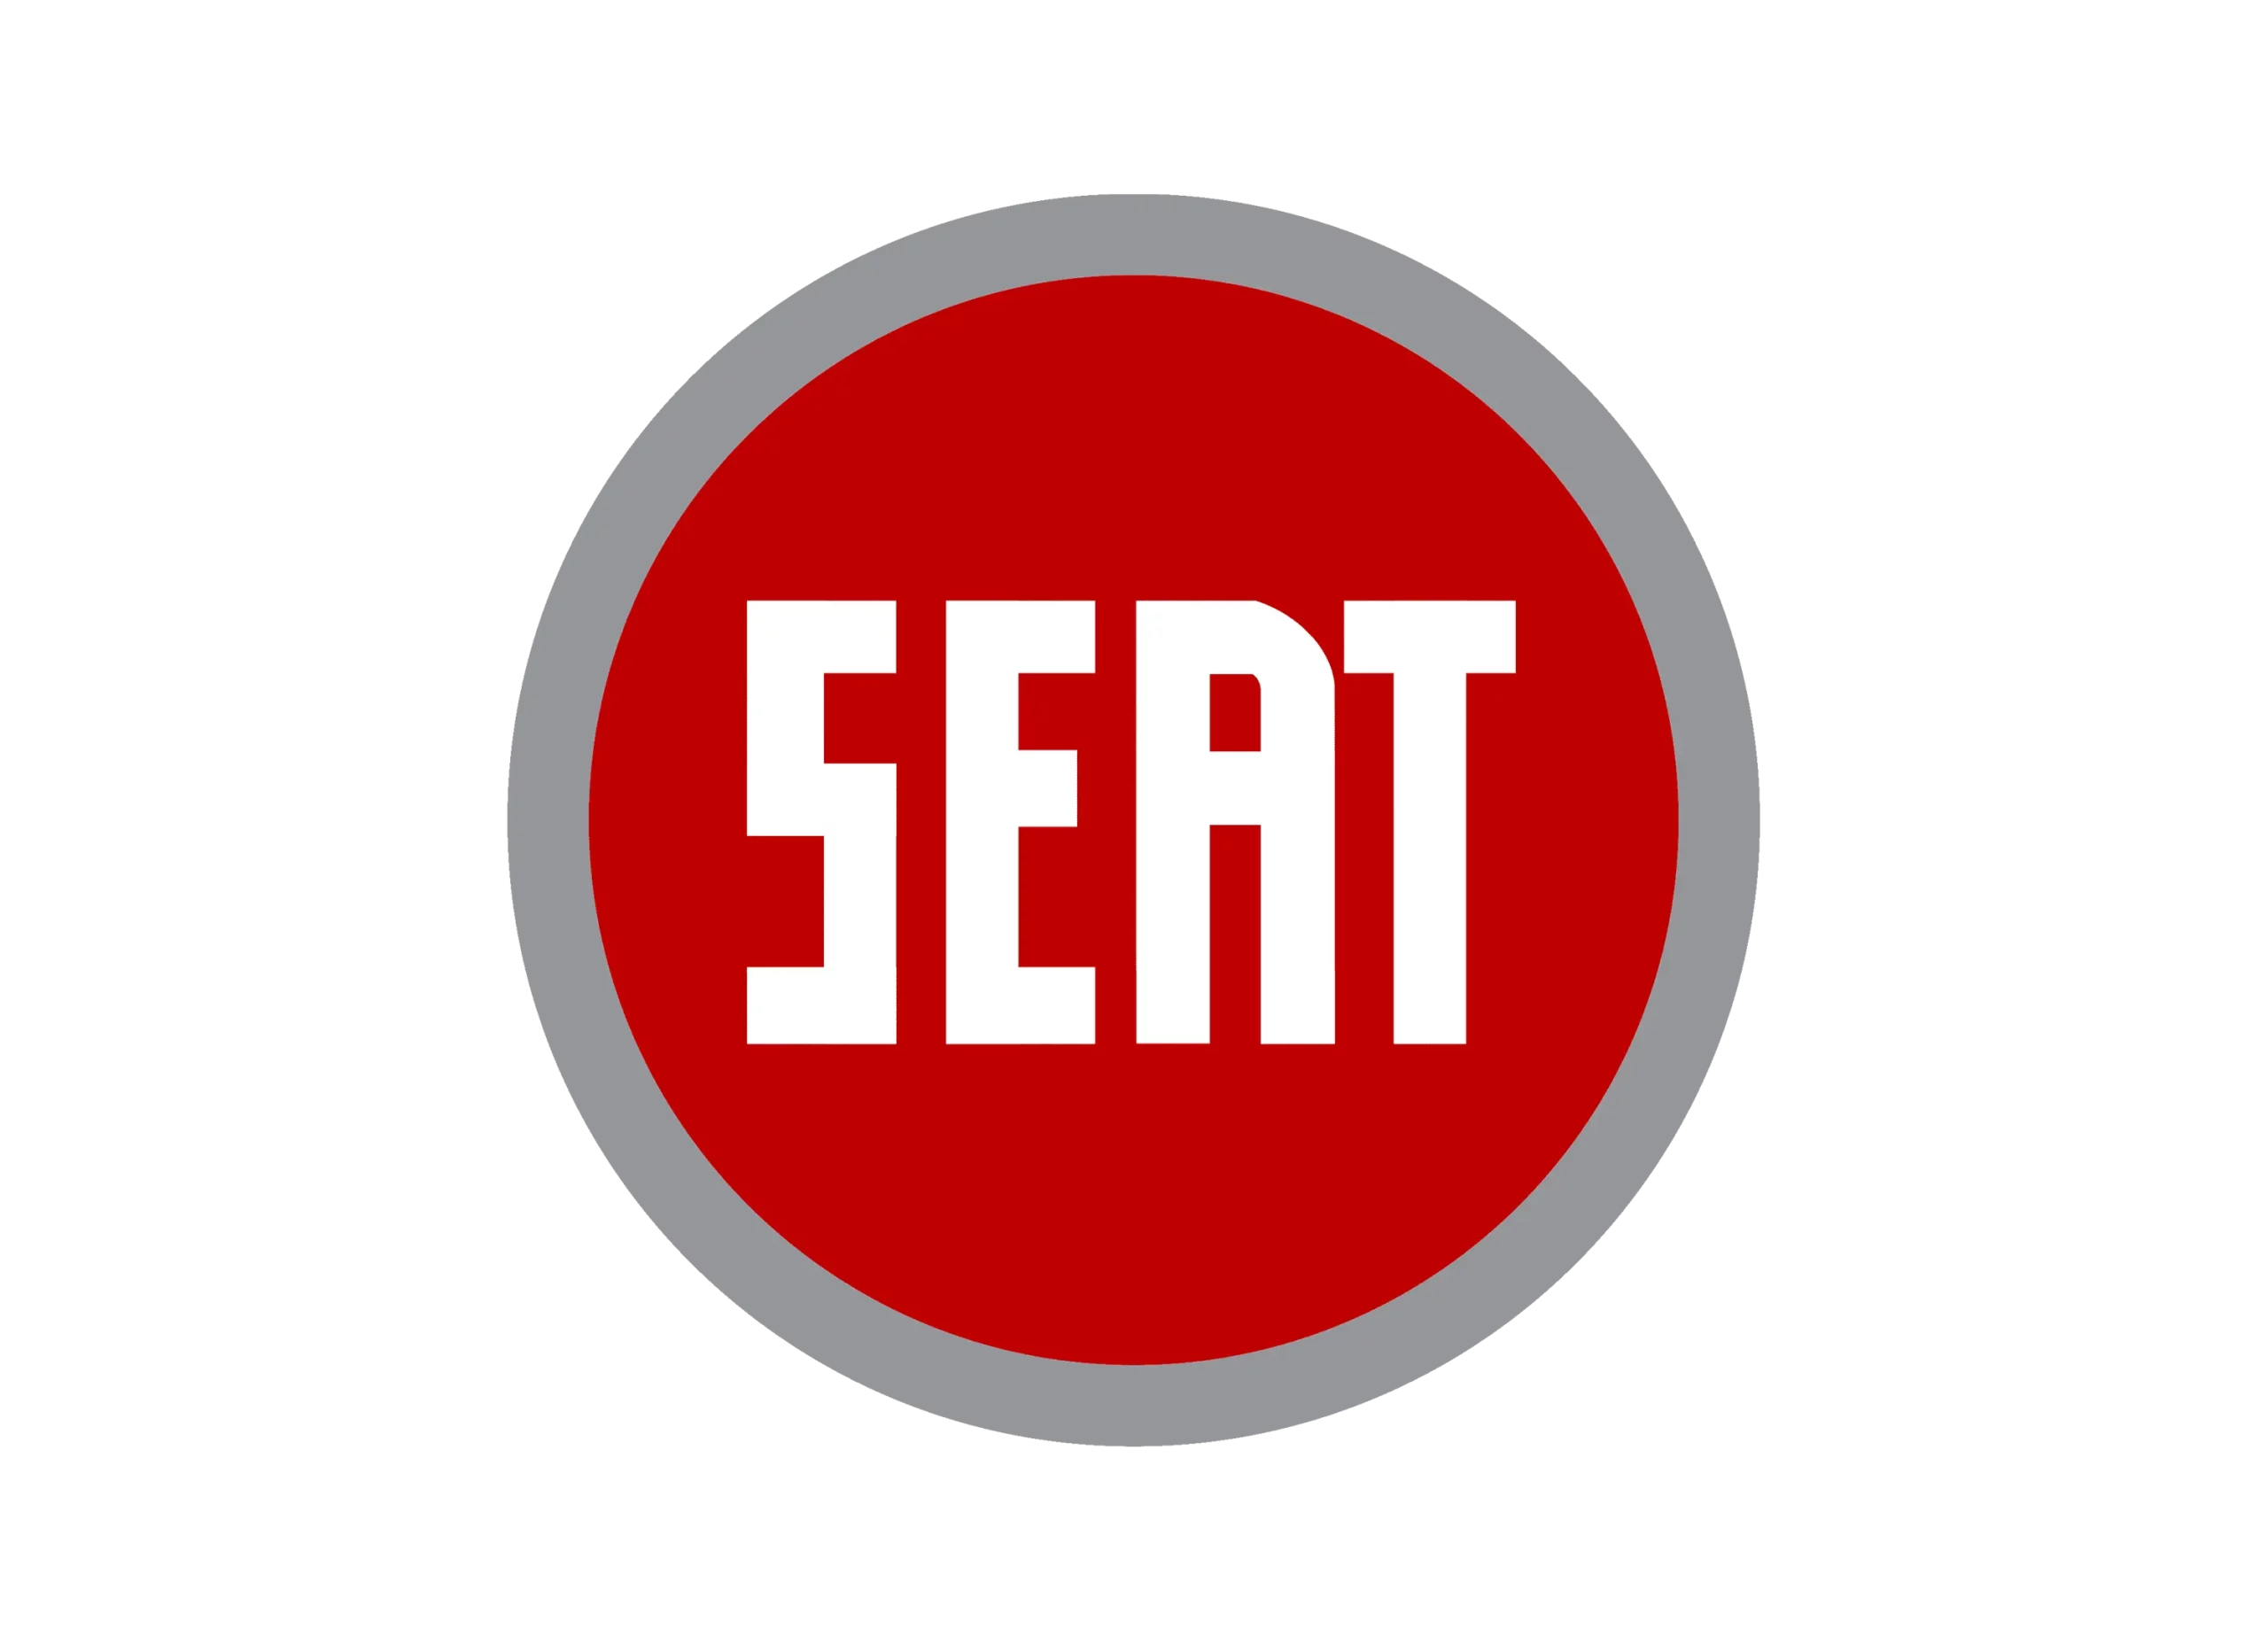 Seat logo 1968-1970